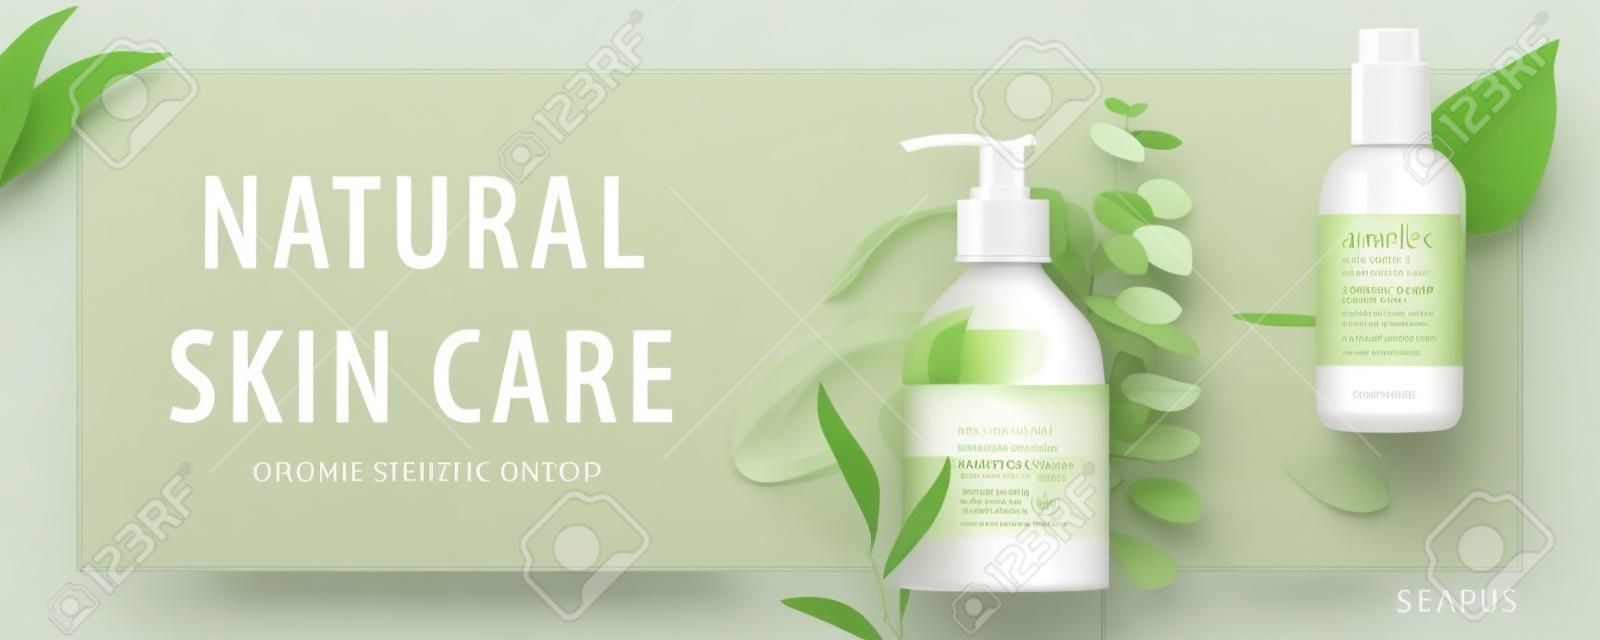 Banner publicitario para productos de belleza simples, maquetas decoradas con hojas naturales y trazos de crema, concepto de cuidado orgánico de la piel, ilustración 3d